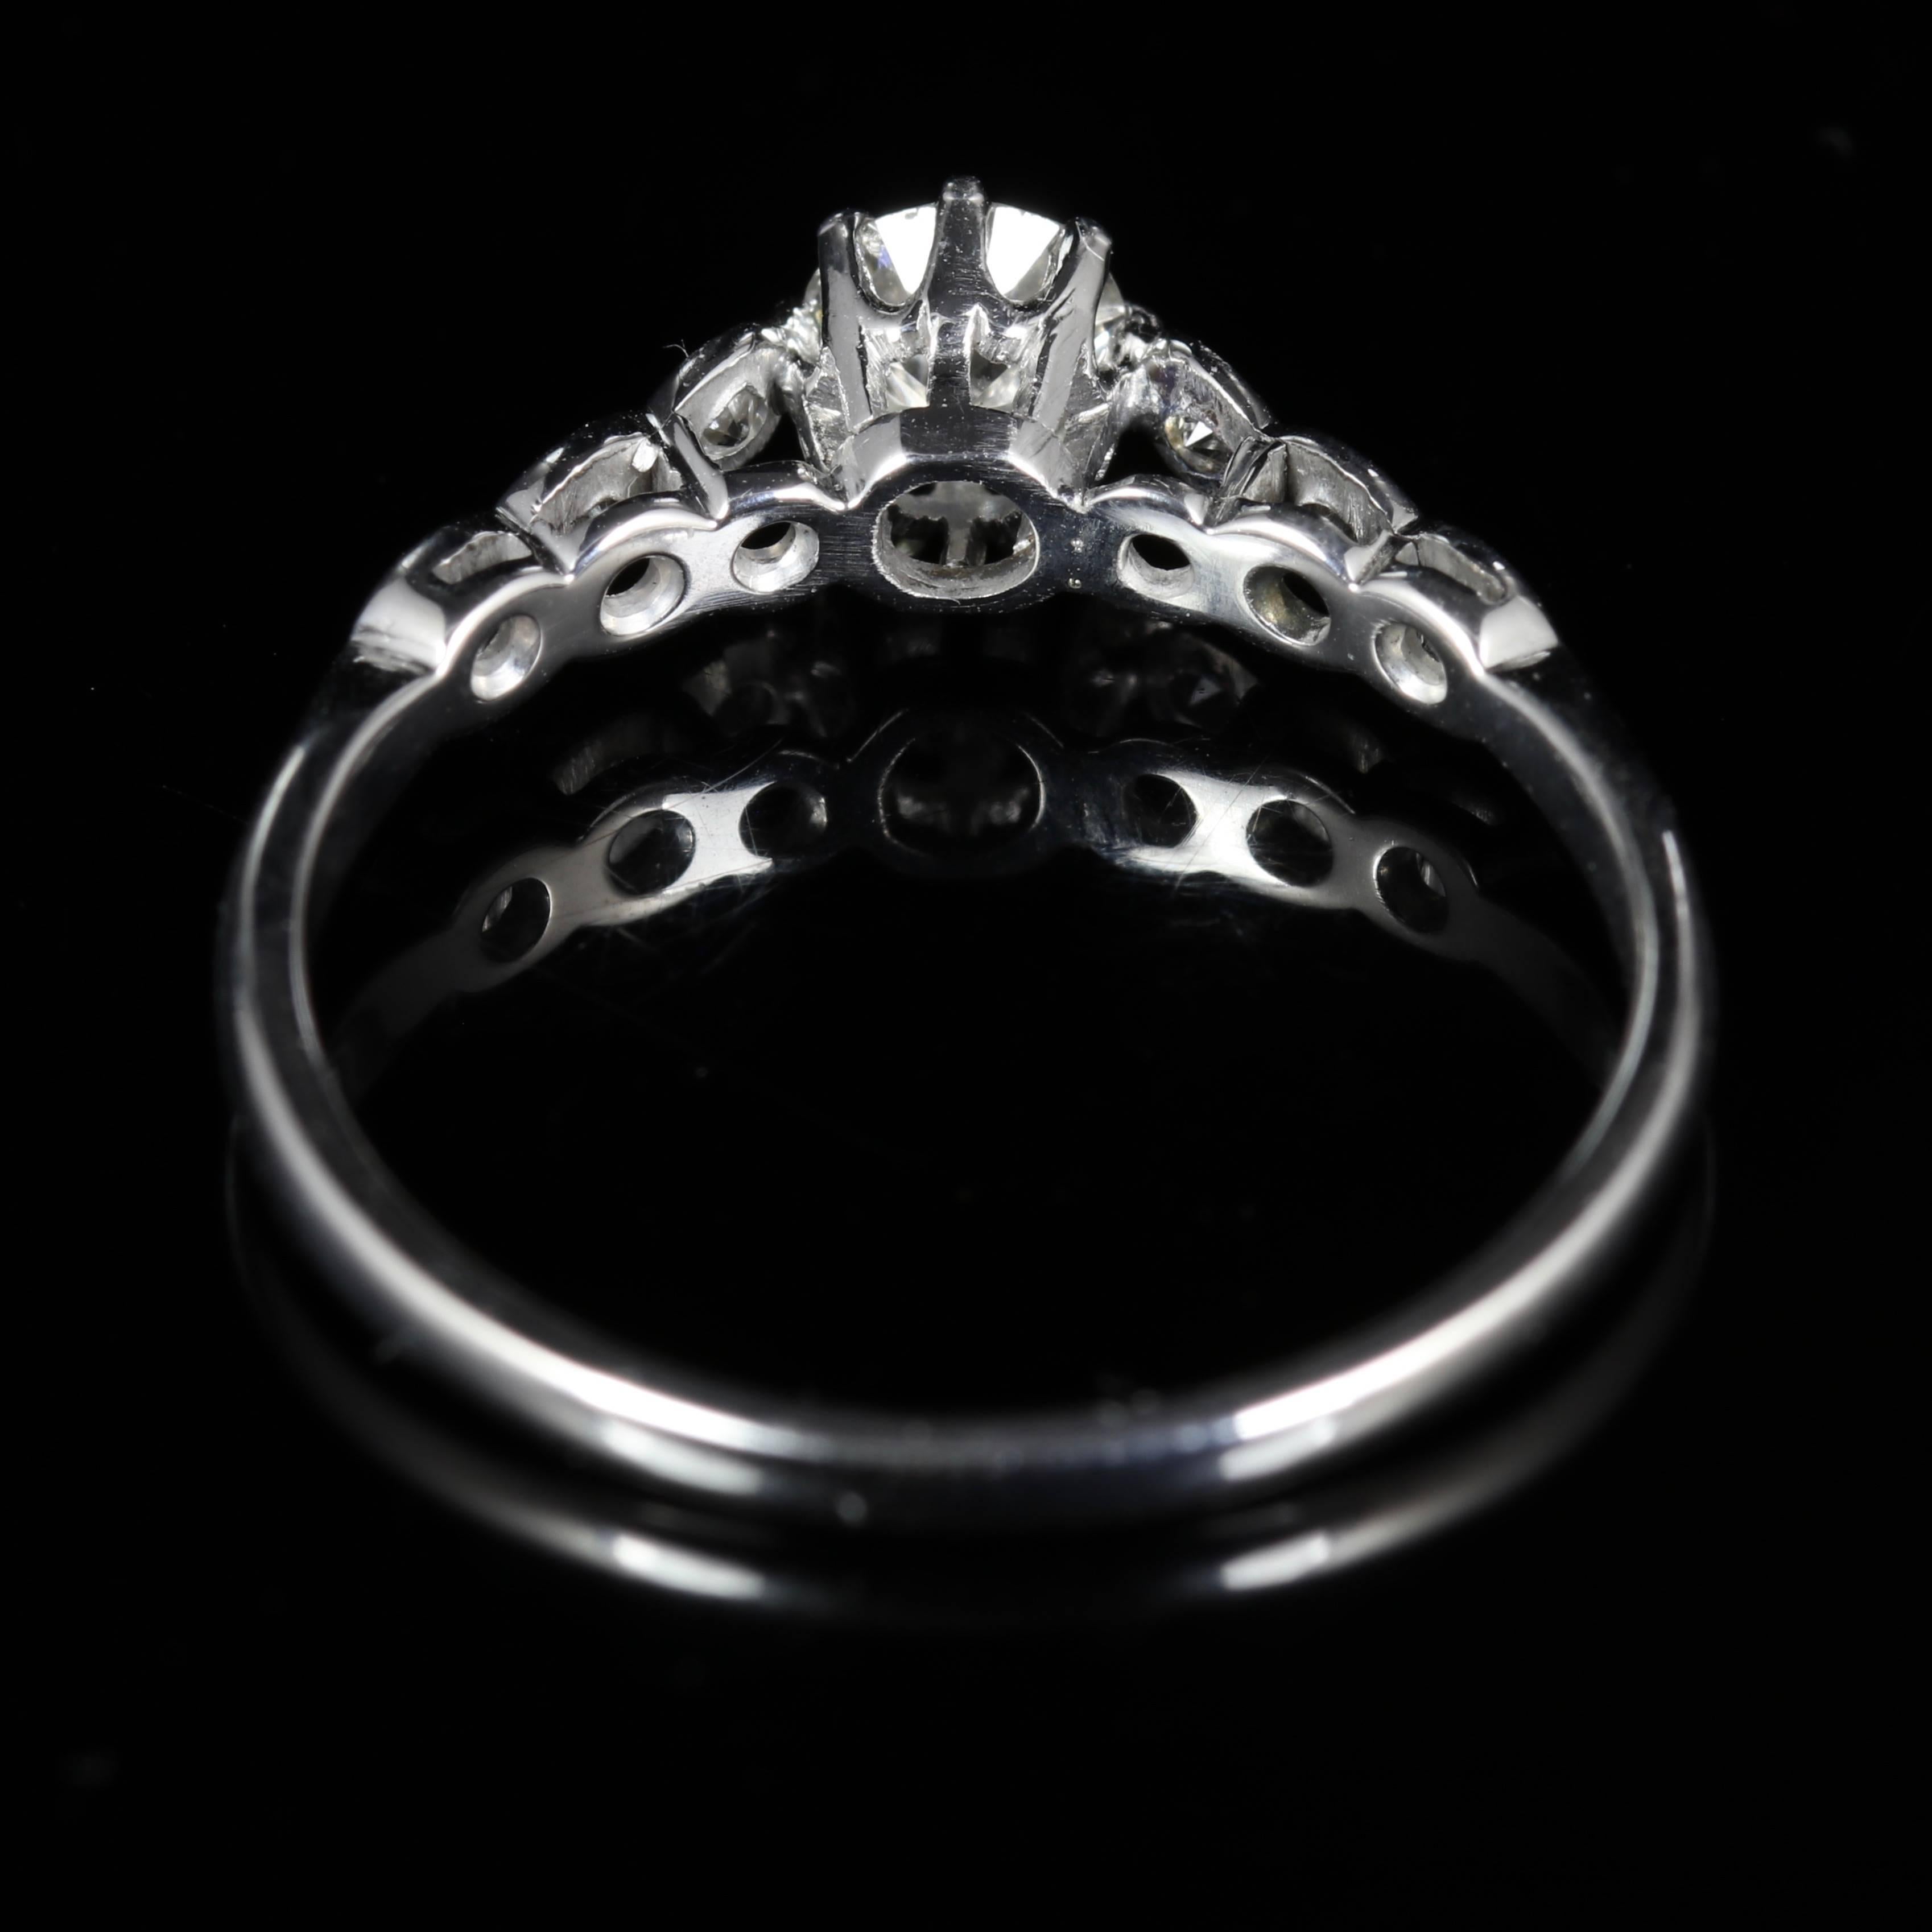 Antique Edwardian Diamond Engagement Ring 18 Carat White Gold, circa 1915 1